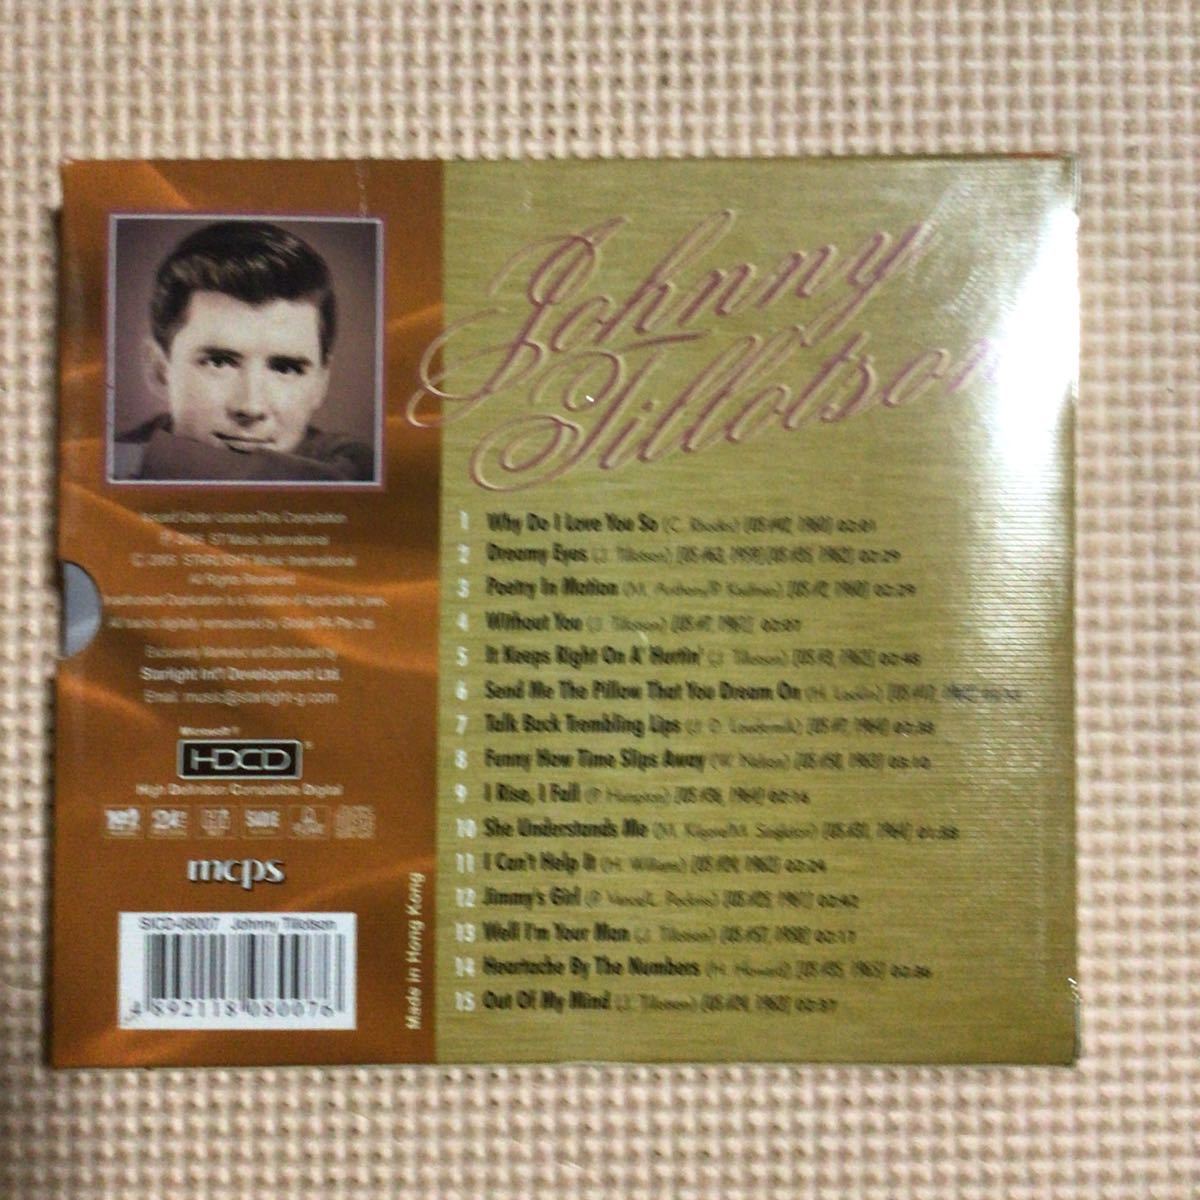 ジョニー・ティロットソン　ザ・ベリー・ベスト・オブ　香港盤CD【未開封新品】HDCD